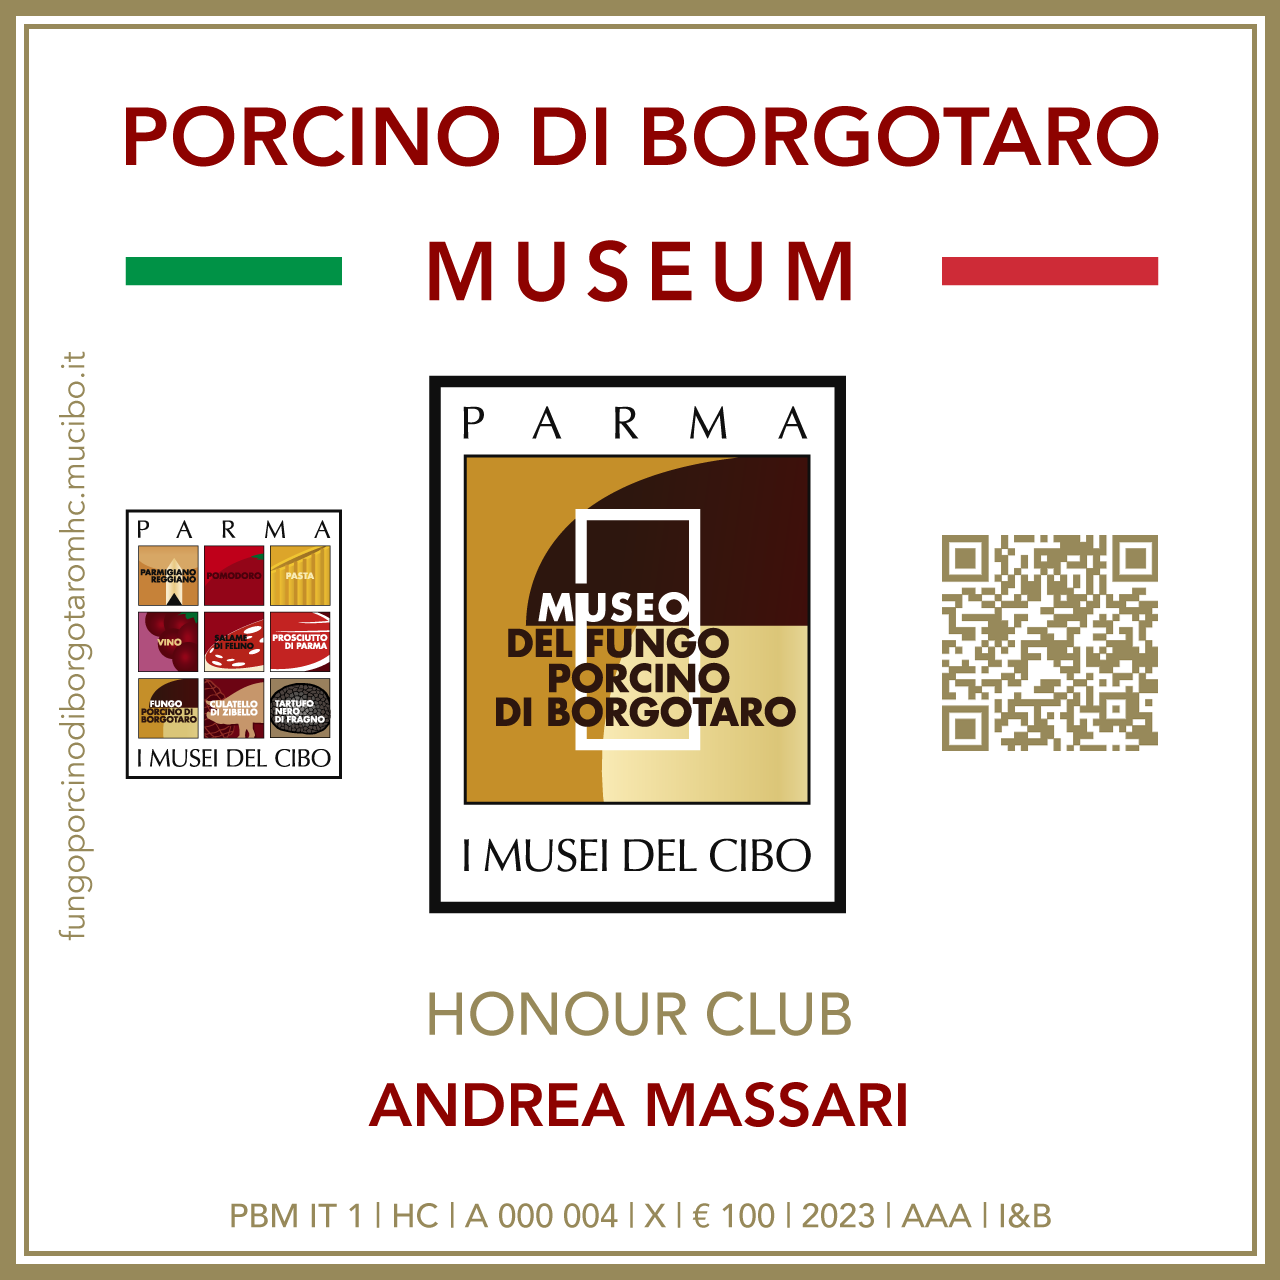 Fungo Porcino di Borgotaro Museum Honour Club - Token Id A 000 004 - ANDREA MASSARI